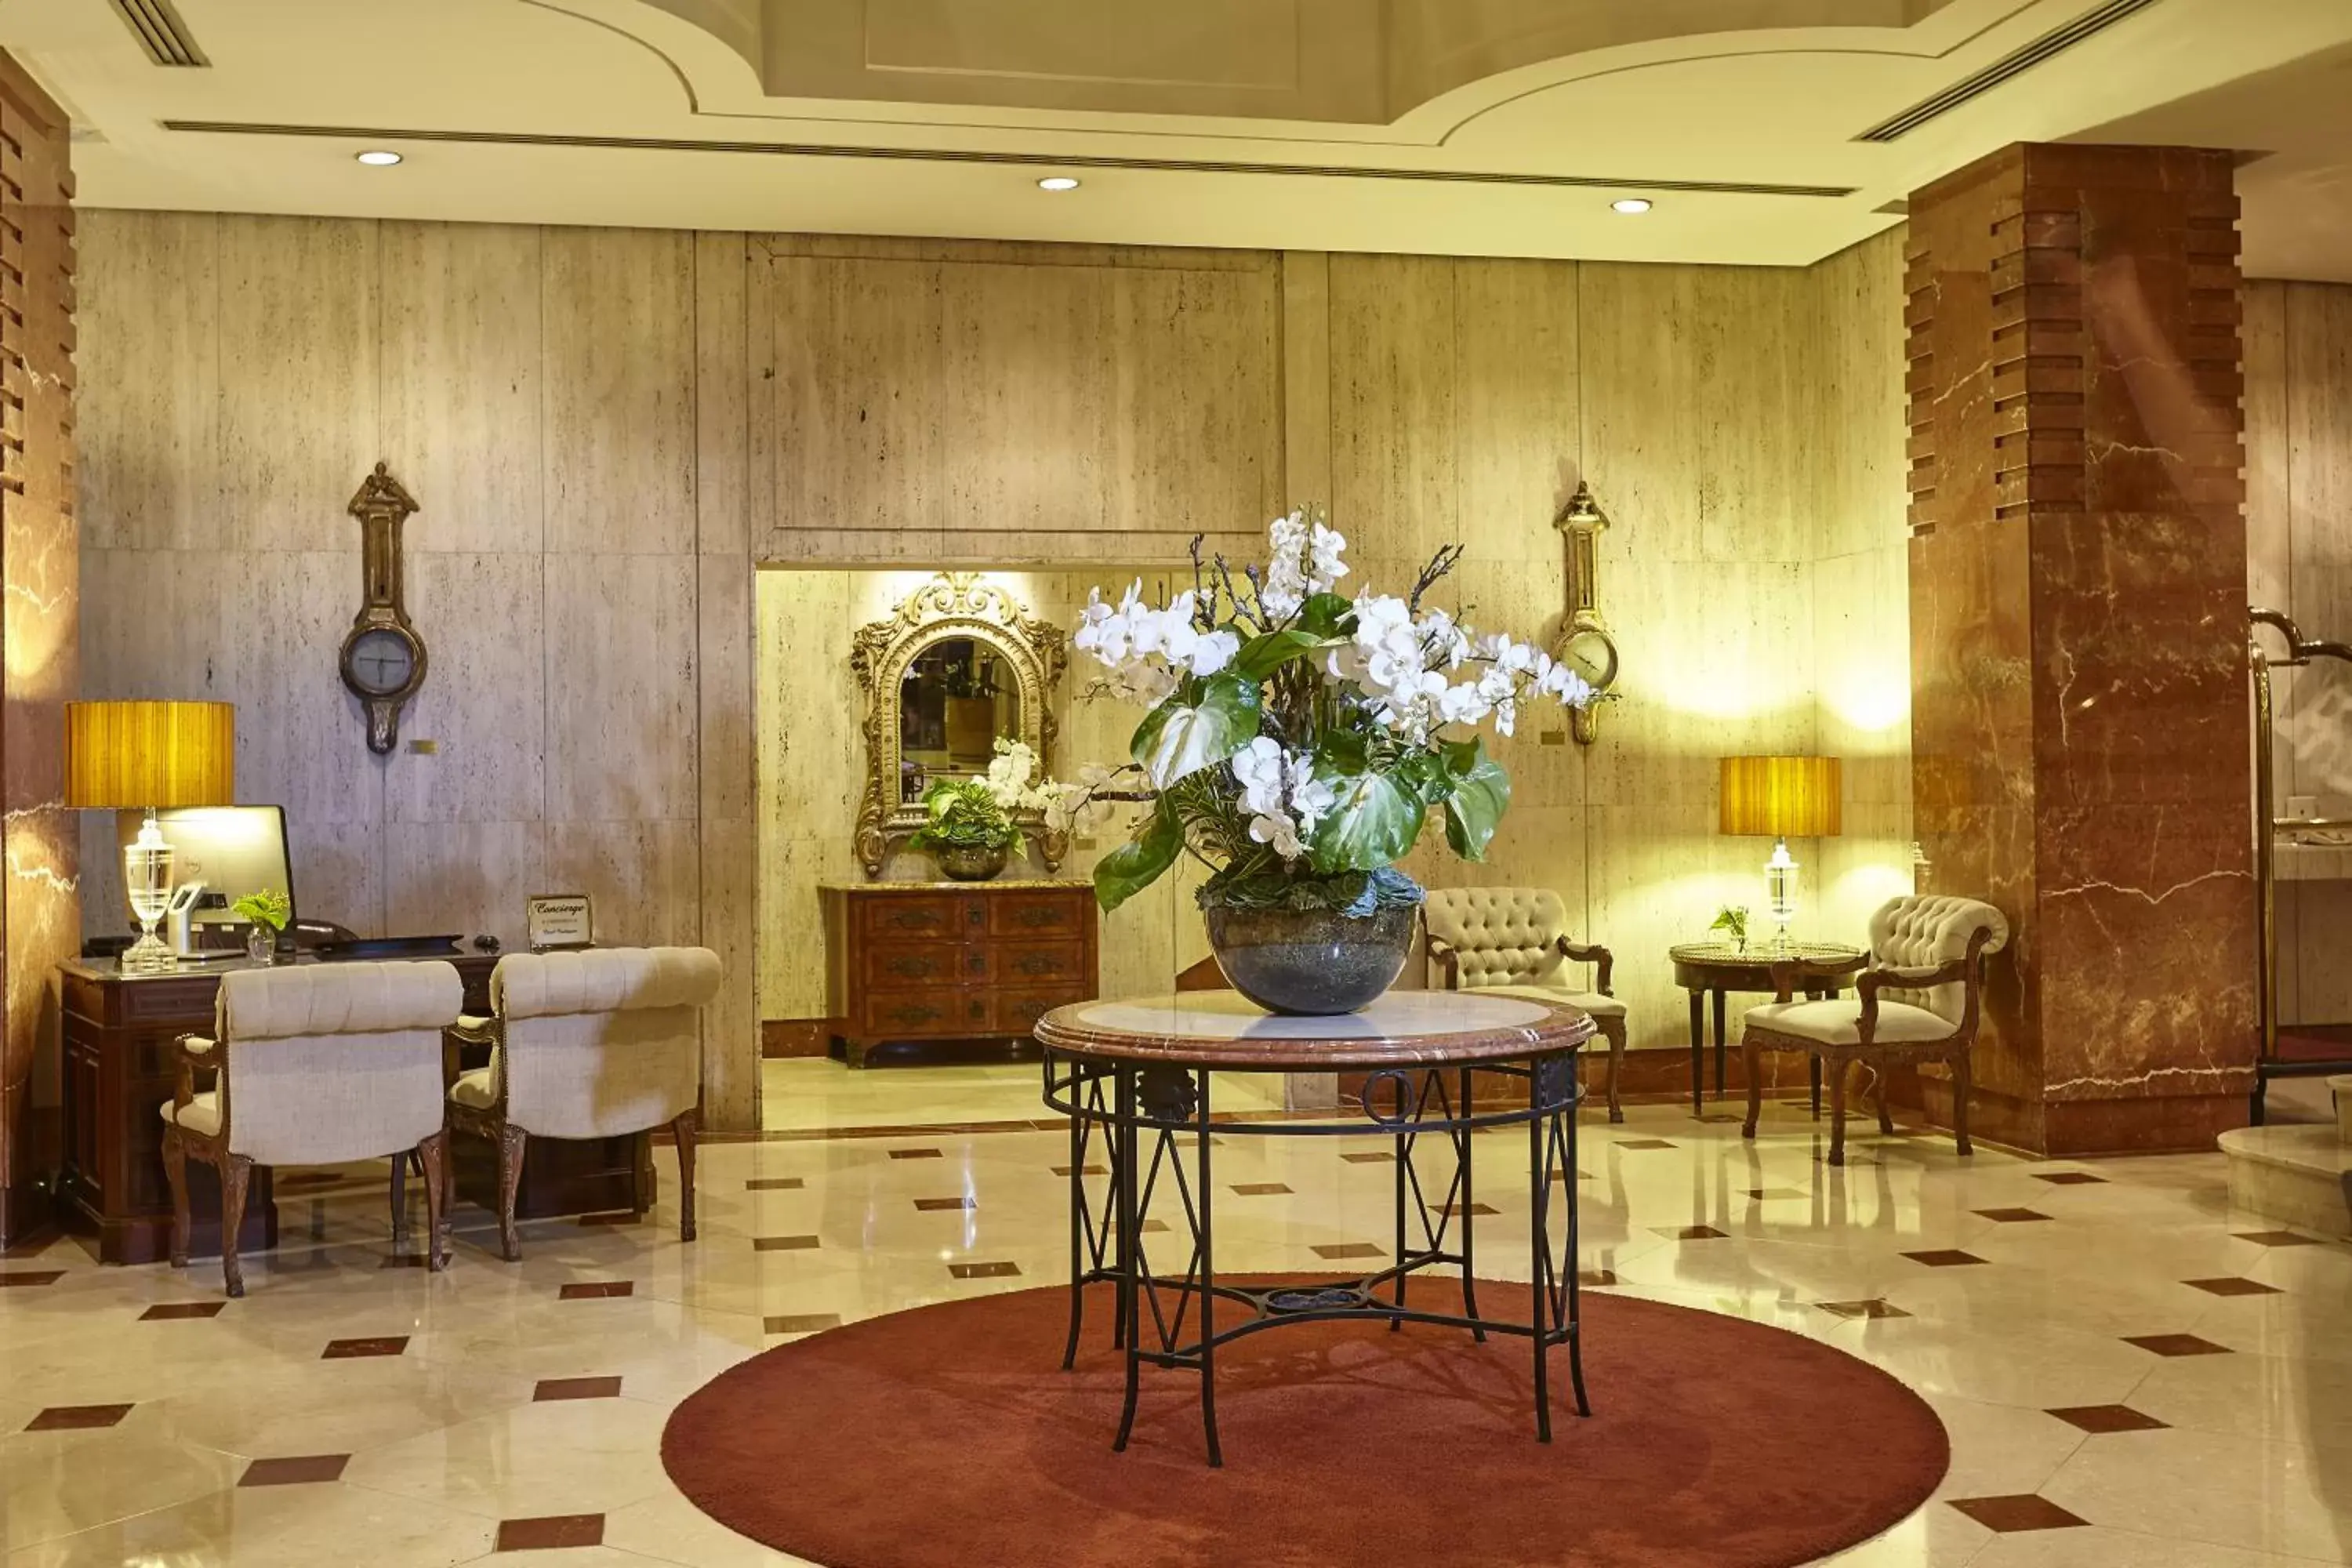 Lobby or reception in L'Hotel PortoBay São Paulo